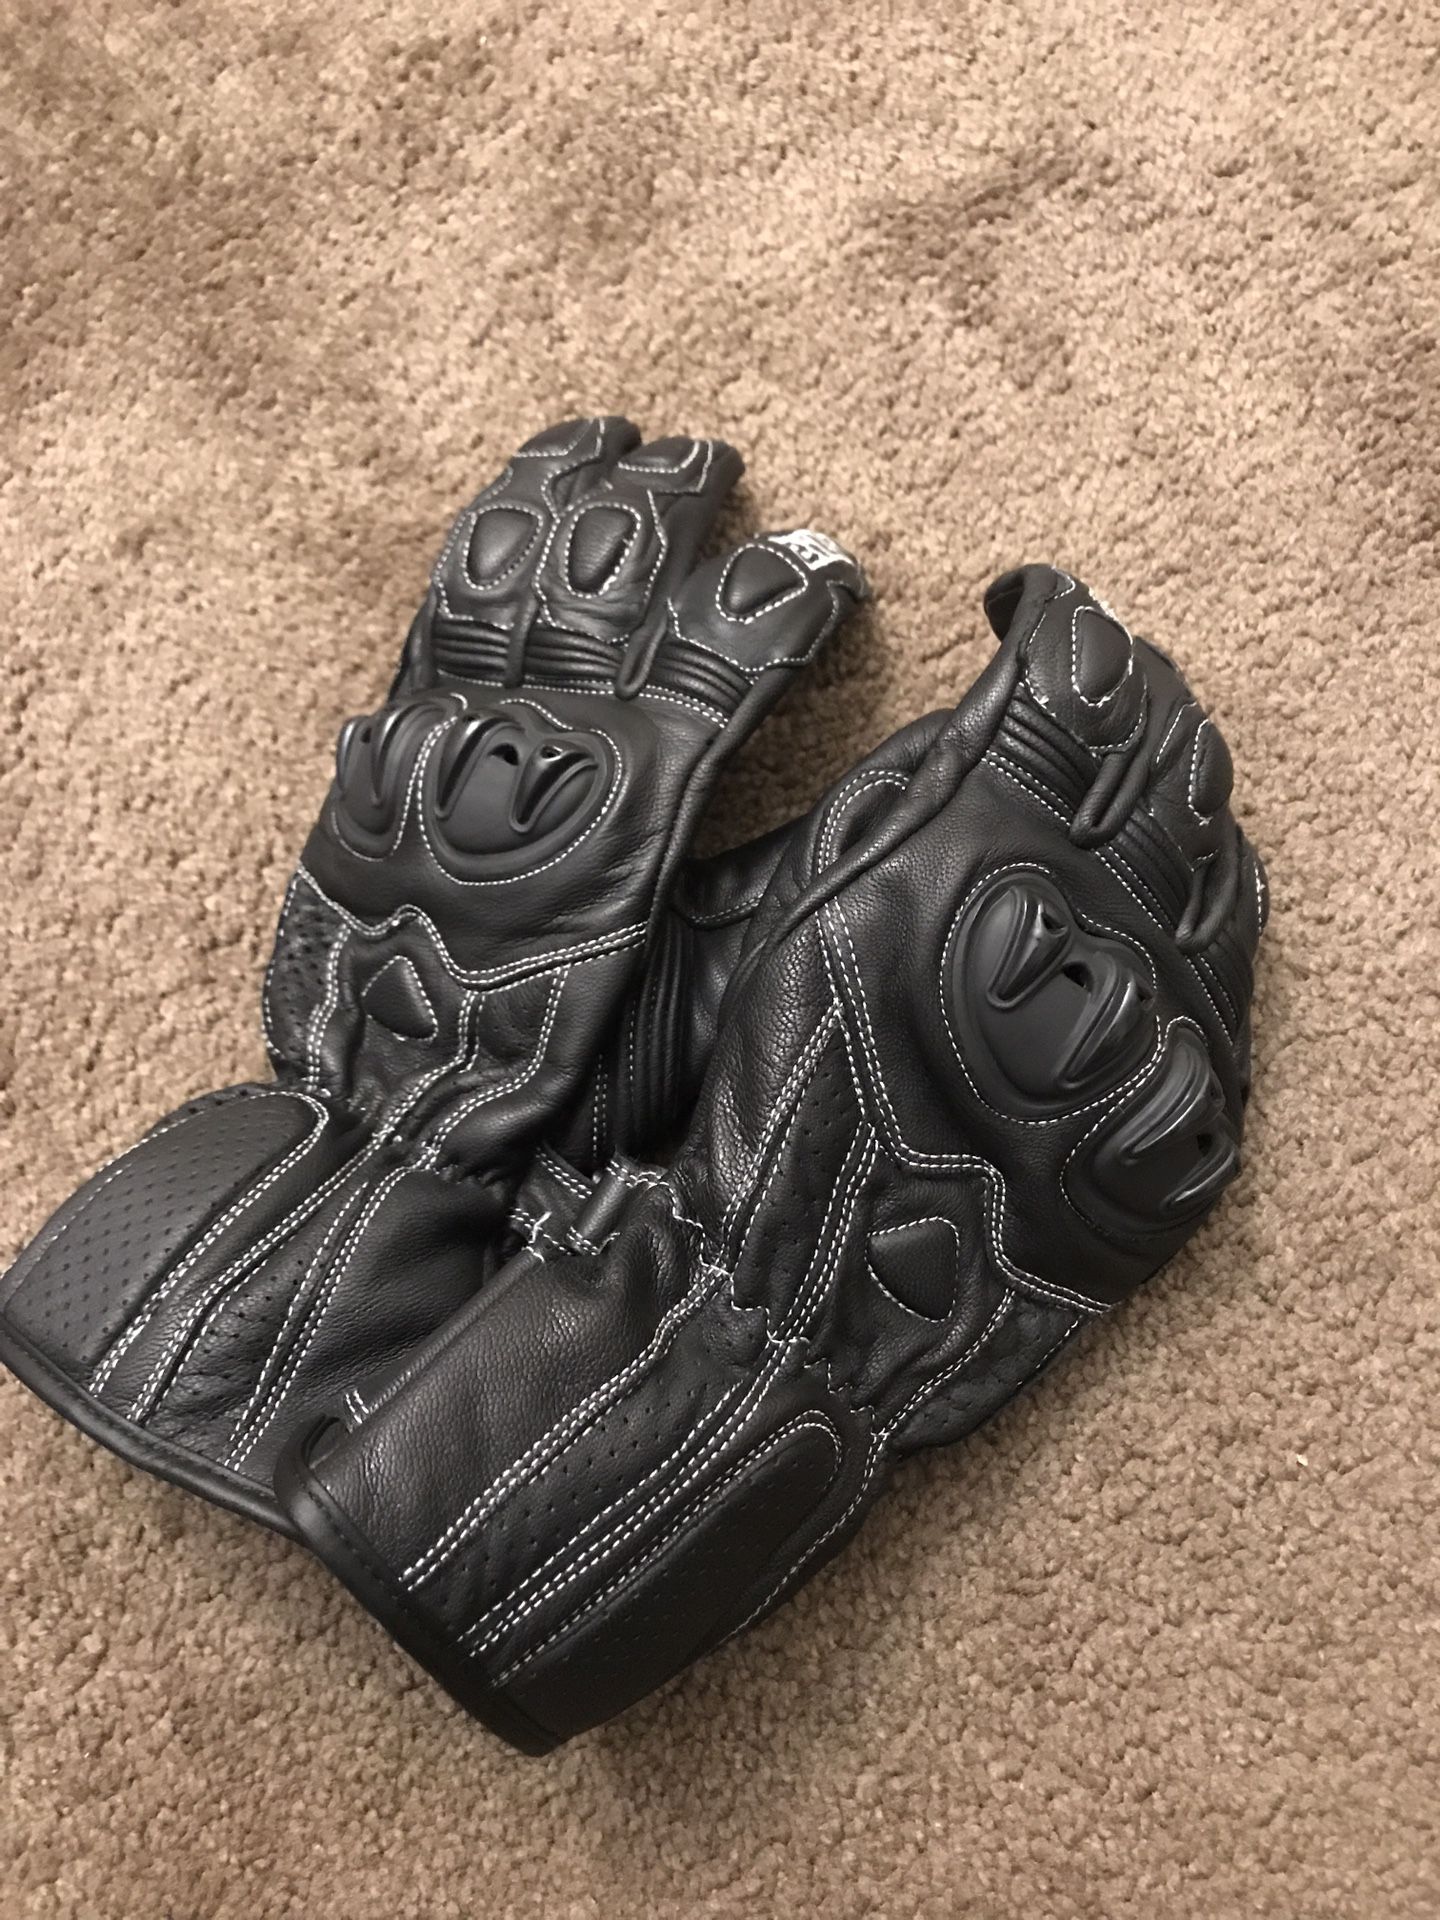 Bilt Gloves (3XL)